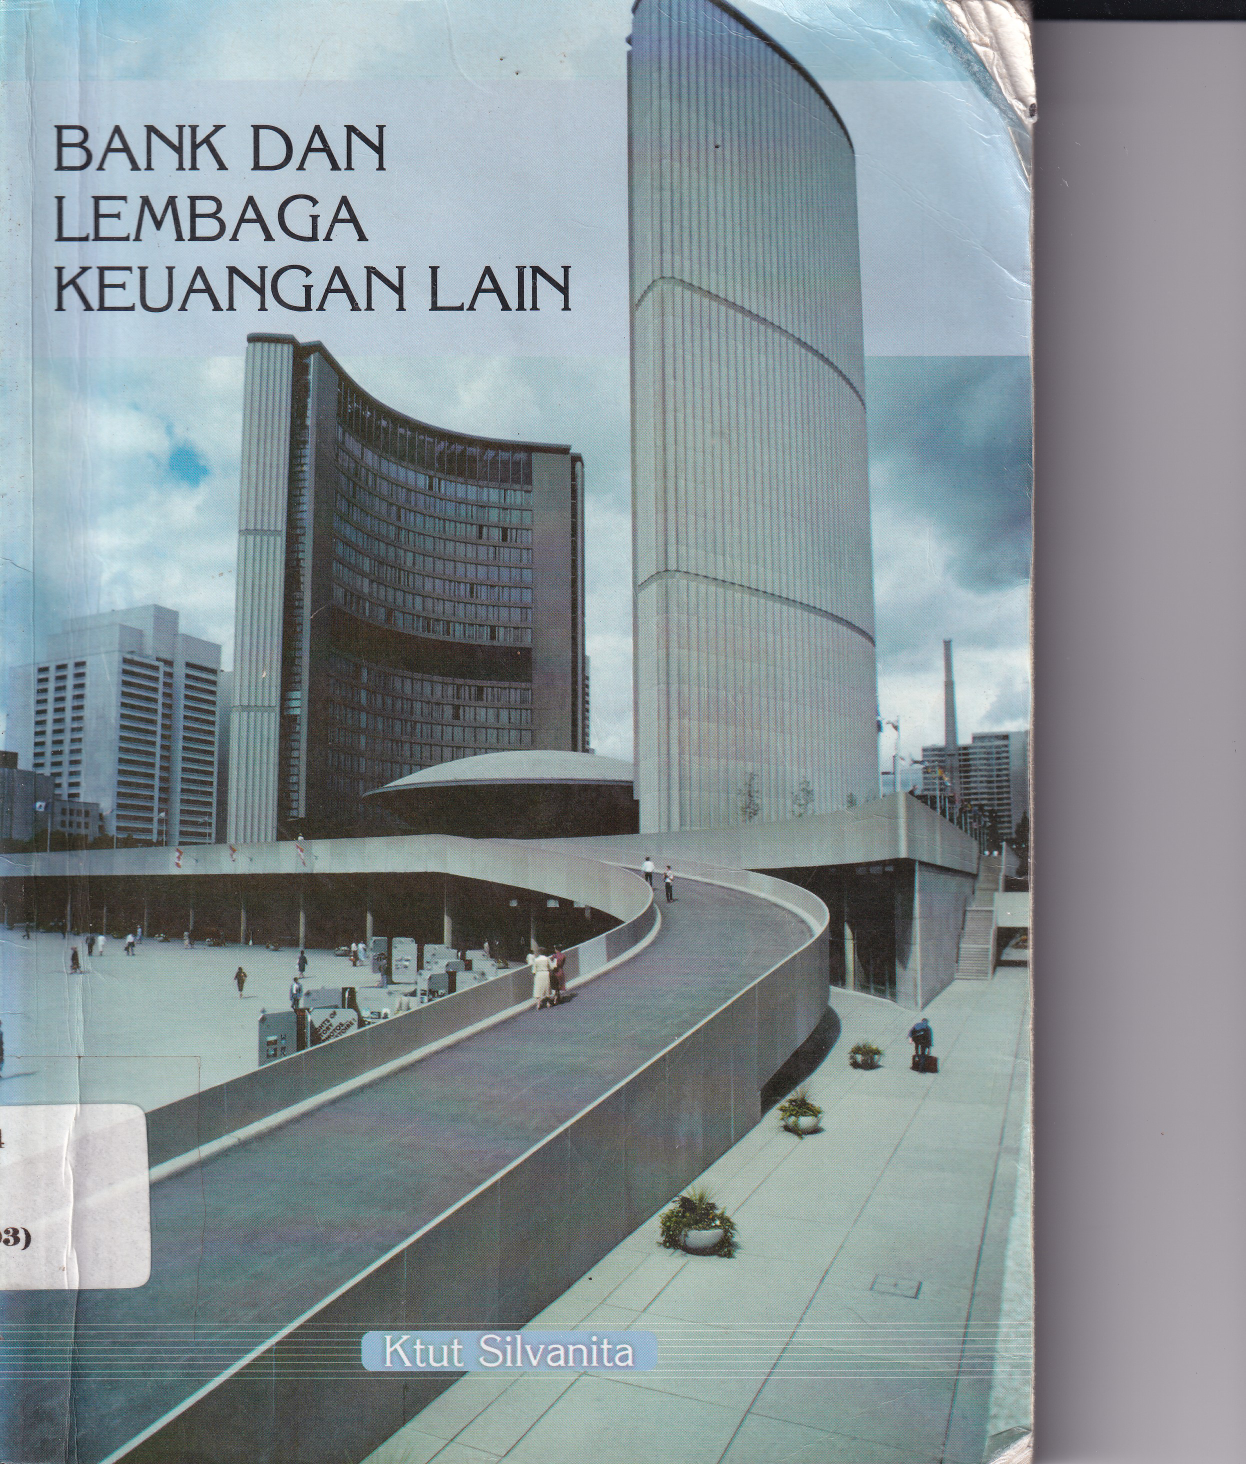 Bank dan lembaga Keuangan